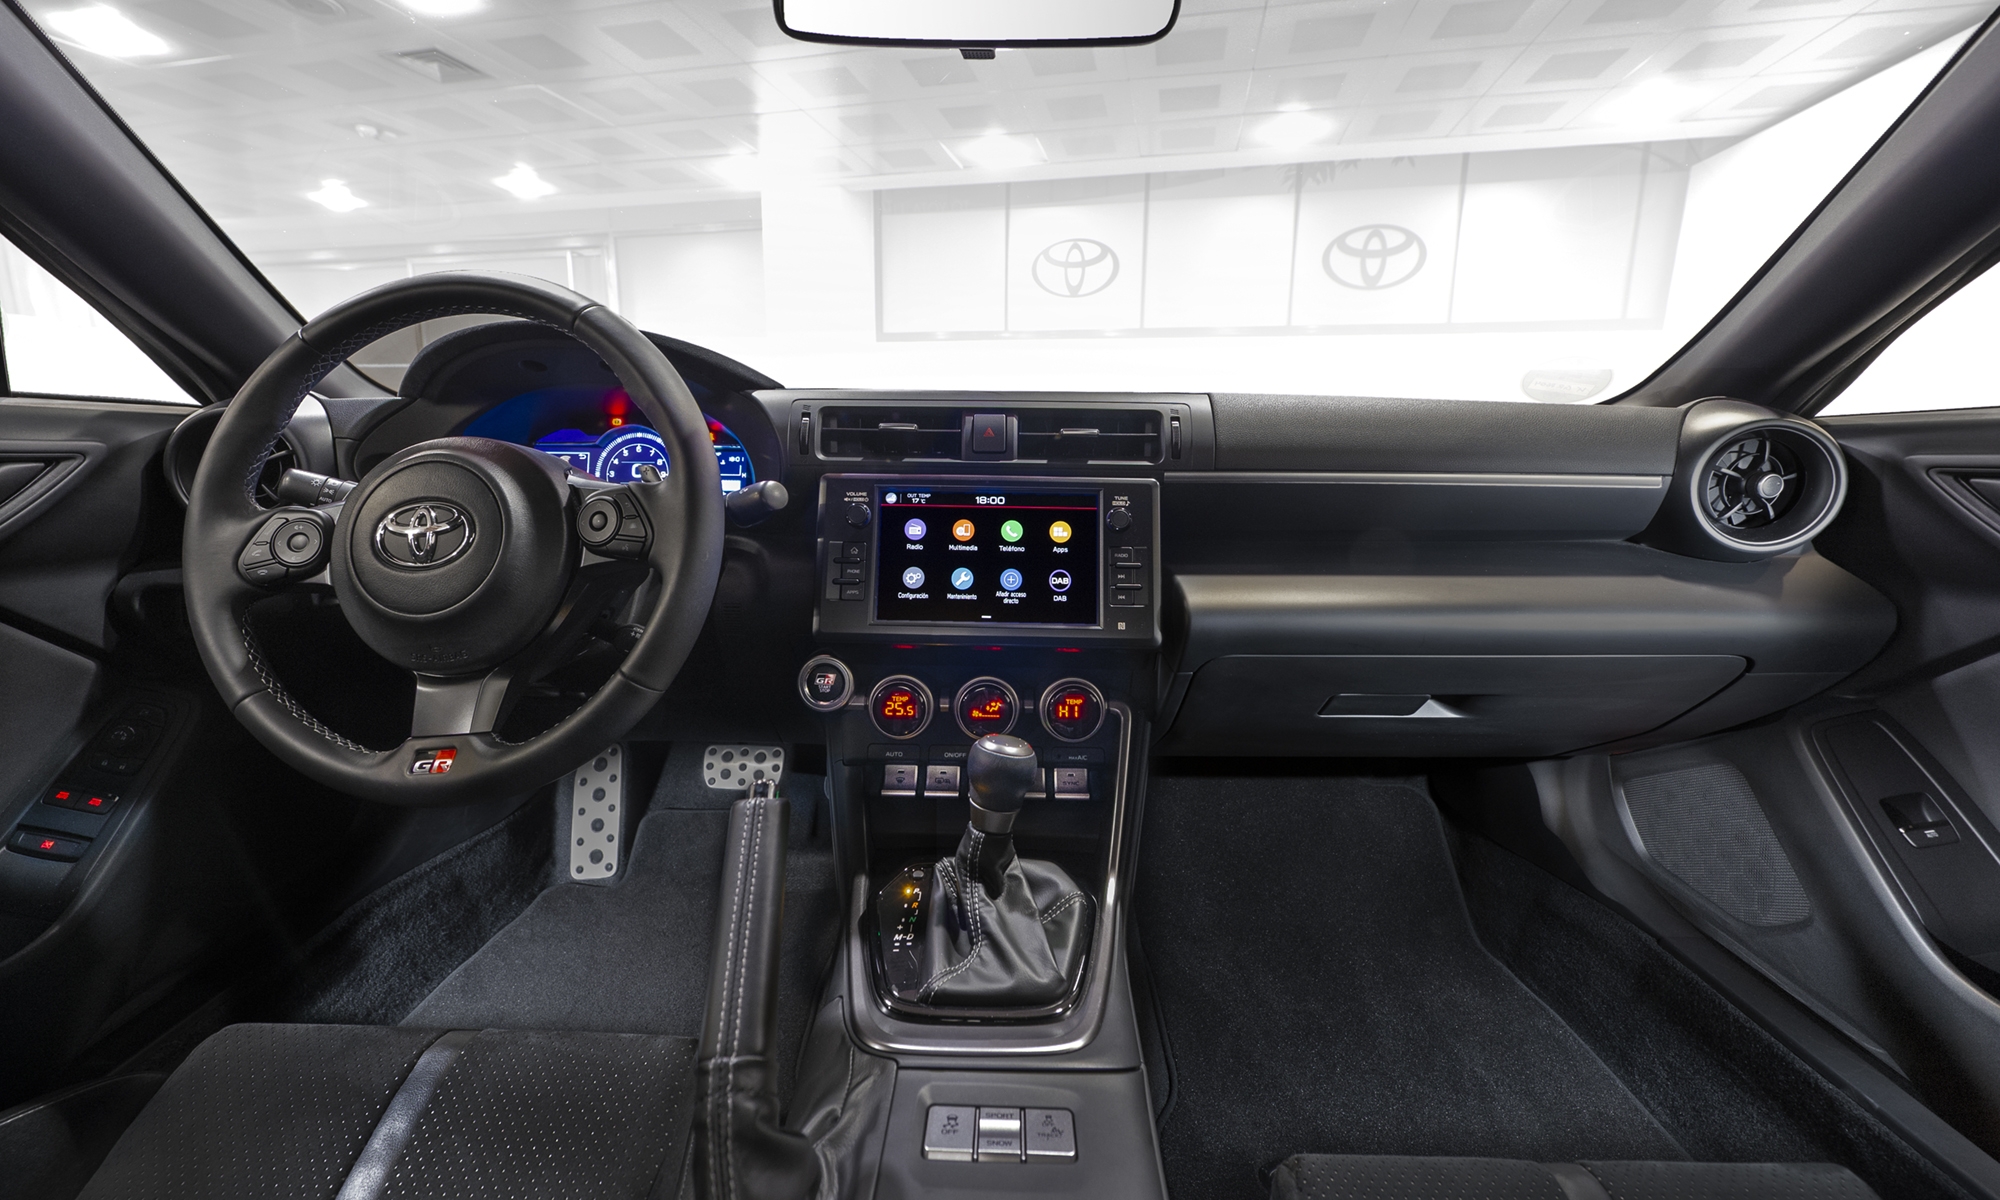 Toyota incorporará una de sus mayores innovaciones en la próxima generación de eléctricos.